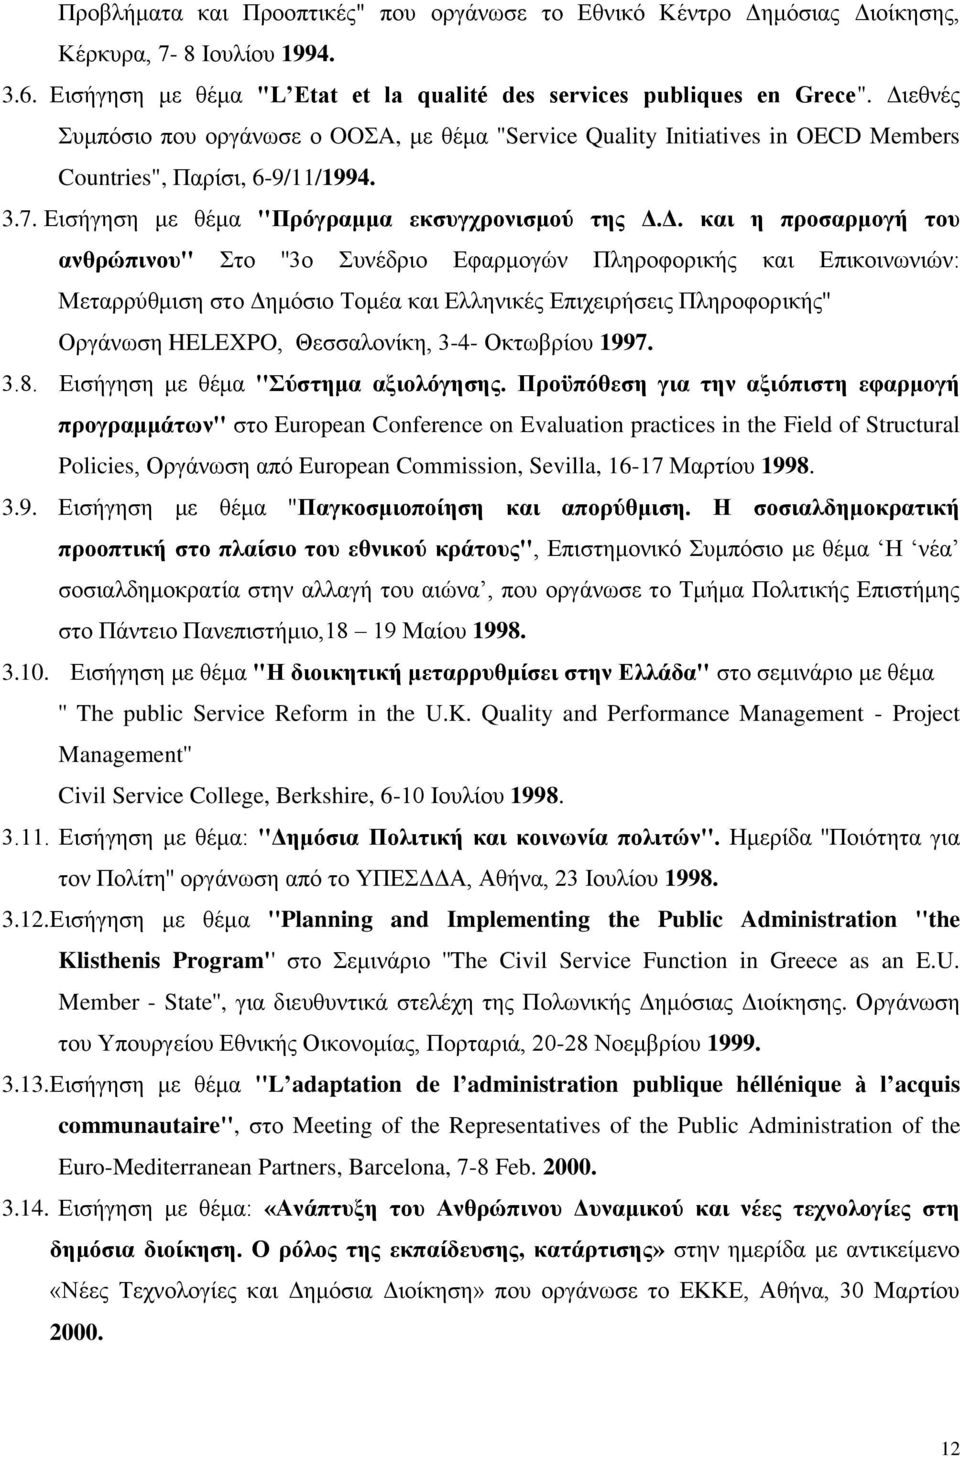 του ανθρώπινου'' Στο ''3ο Συνέδριο Εφαρμογών Πληροφορικής και Επικοινωνιών: Μεταρρύθμιση στο Δημόσιο Τομέα και Ελληνικές Επιχειρήσεις Πληροφορικής'' Οργάνωση HELEXPO, Θεσσαλονίκη, 3-4- Οκτωβρίου 1997.